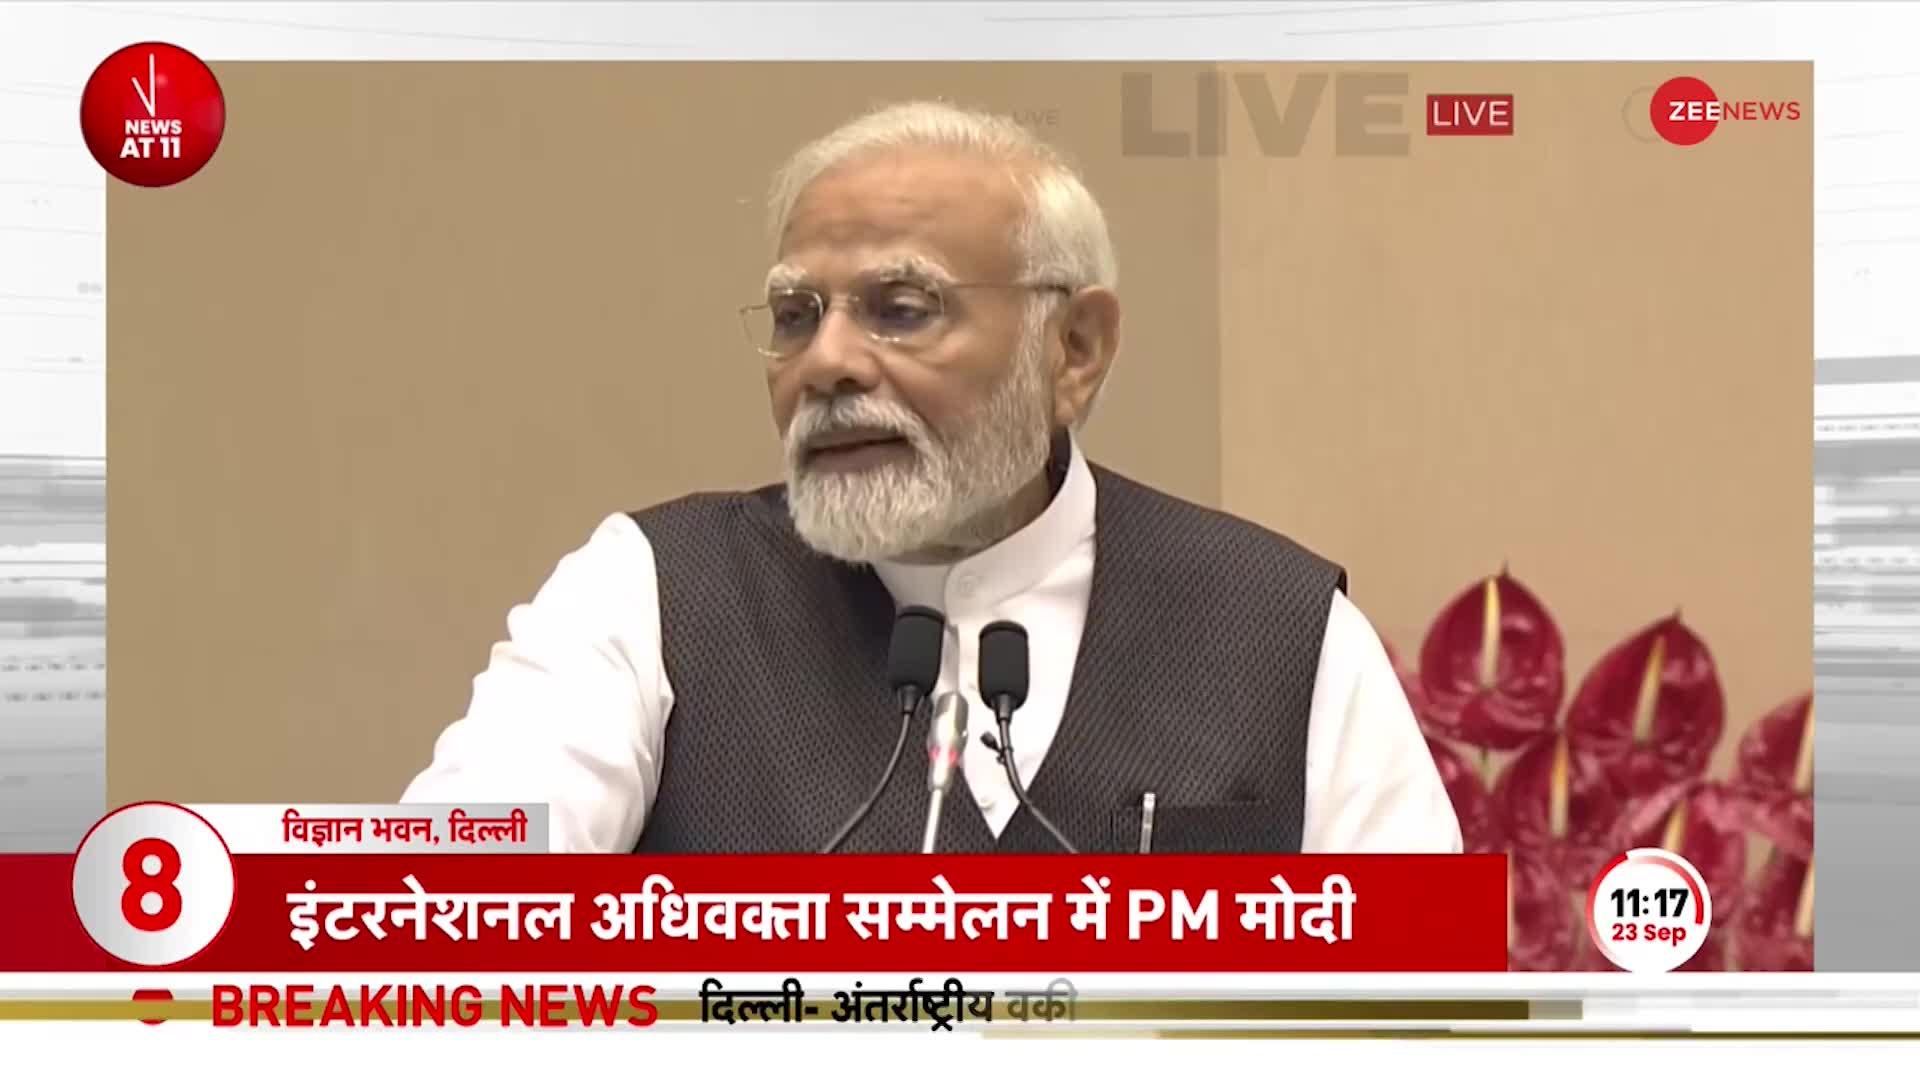 PM Modi LIVE: देश के कानूनों में बड़ा परिवर्तन, कानून की सरलता बड़ा पहलू है